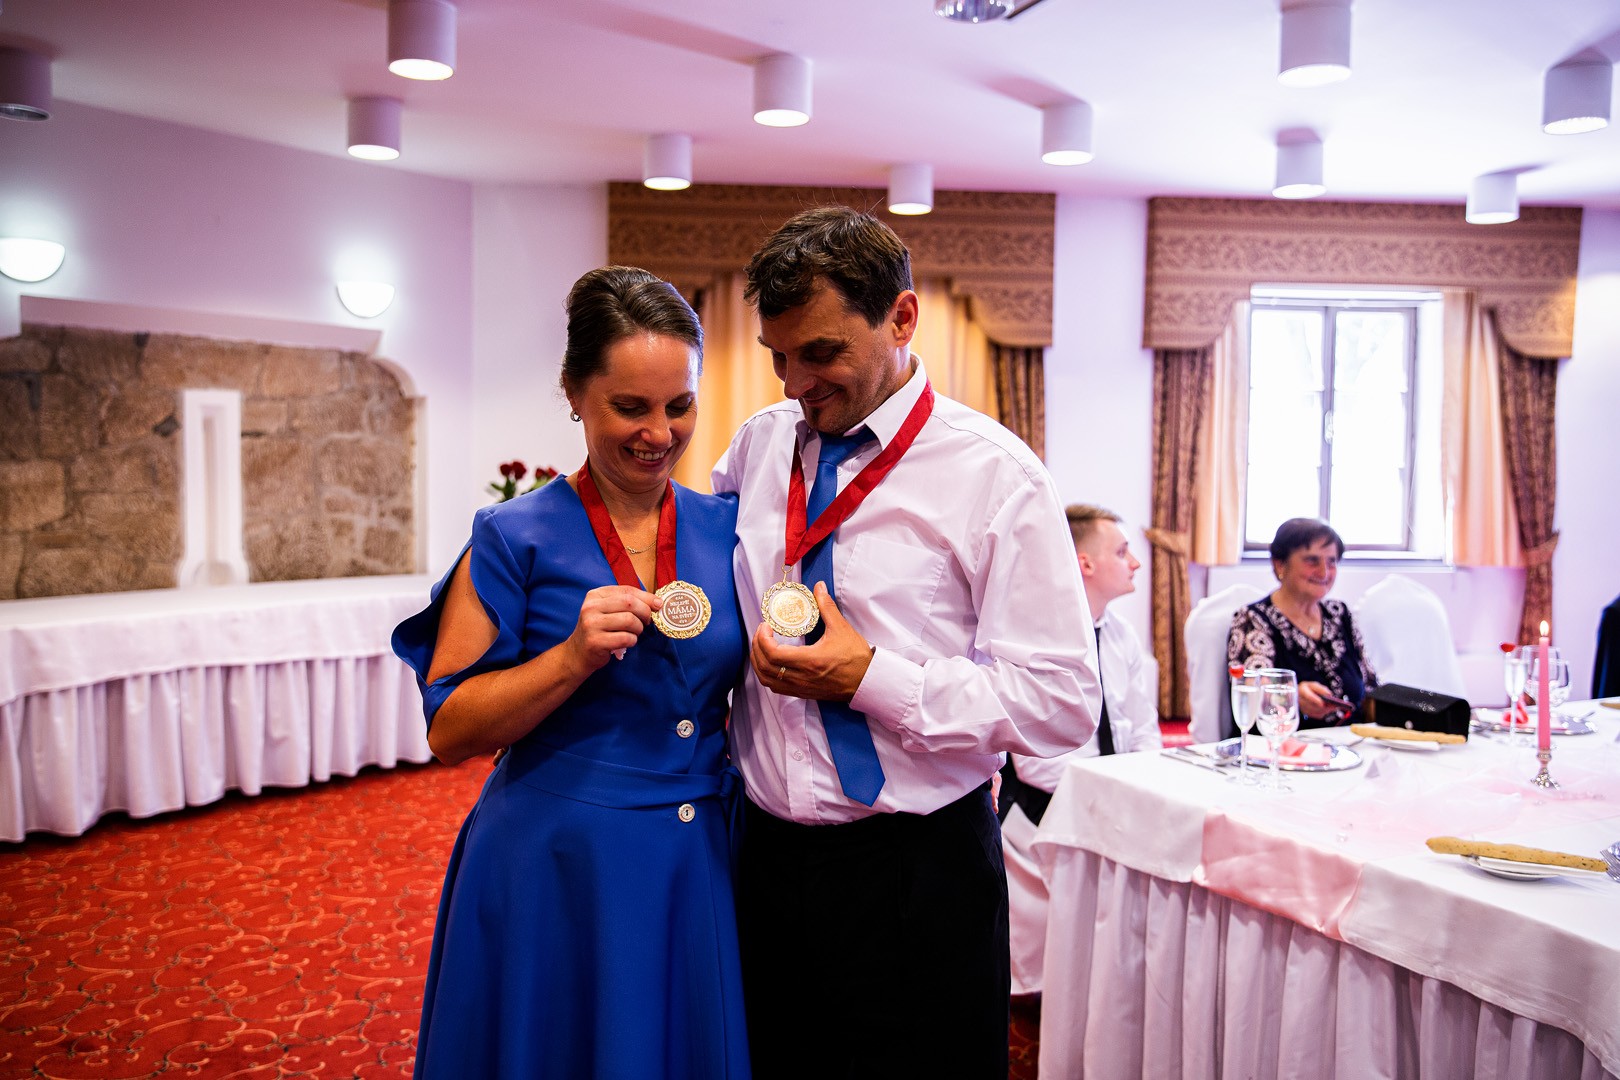 Picturesque dream wedding of Kloudy & Michal in Hluboká nad Vltavou. - 0285.jpg